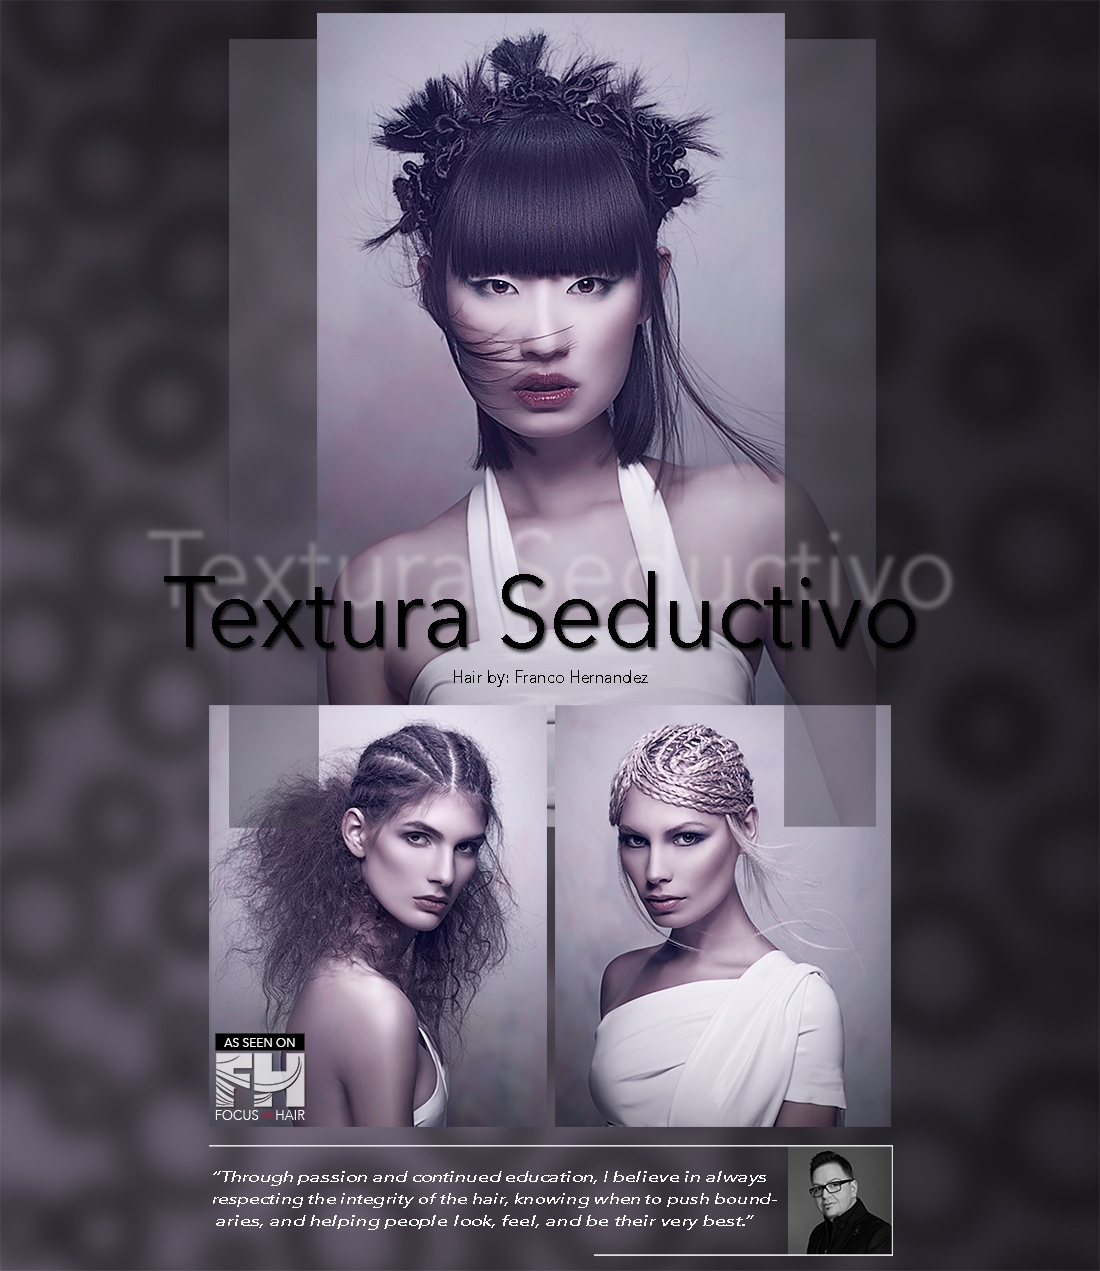 Textura Seductivo Collection by Franco Hernandez